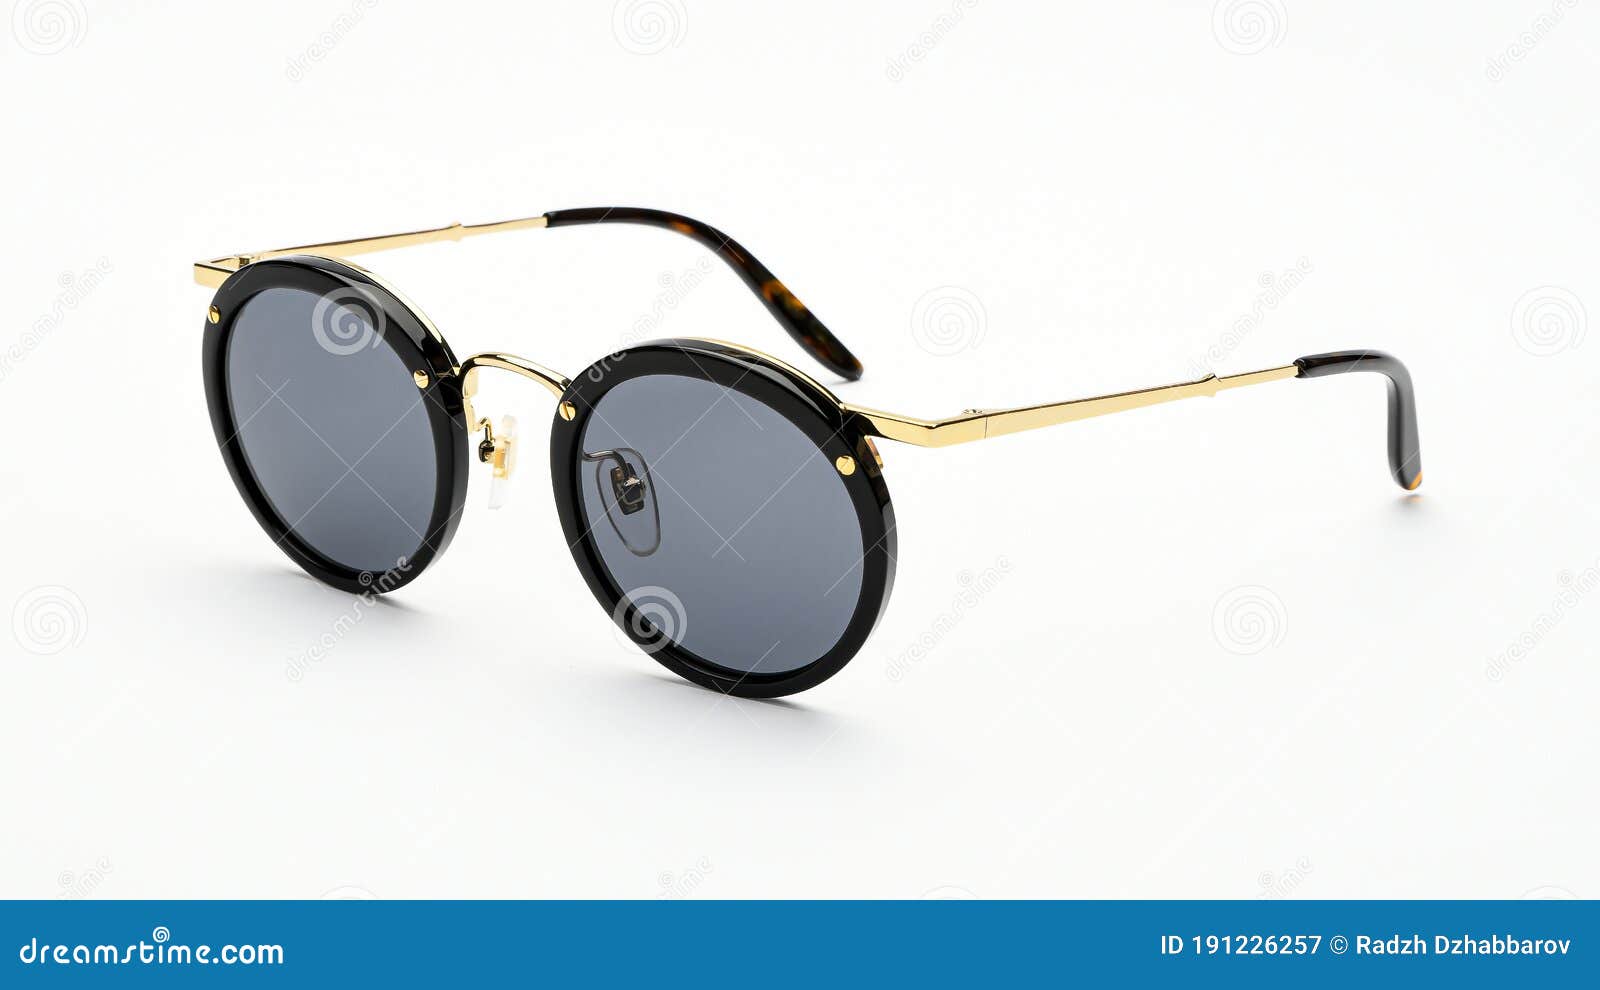 Gafas De Sol Retro En Fondo Blanco. Gafas De Sol Accesorios Mujer De Verano Color Negro Imagen de archivo - Imagen de ropa: 191226257